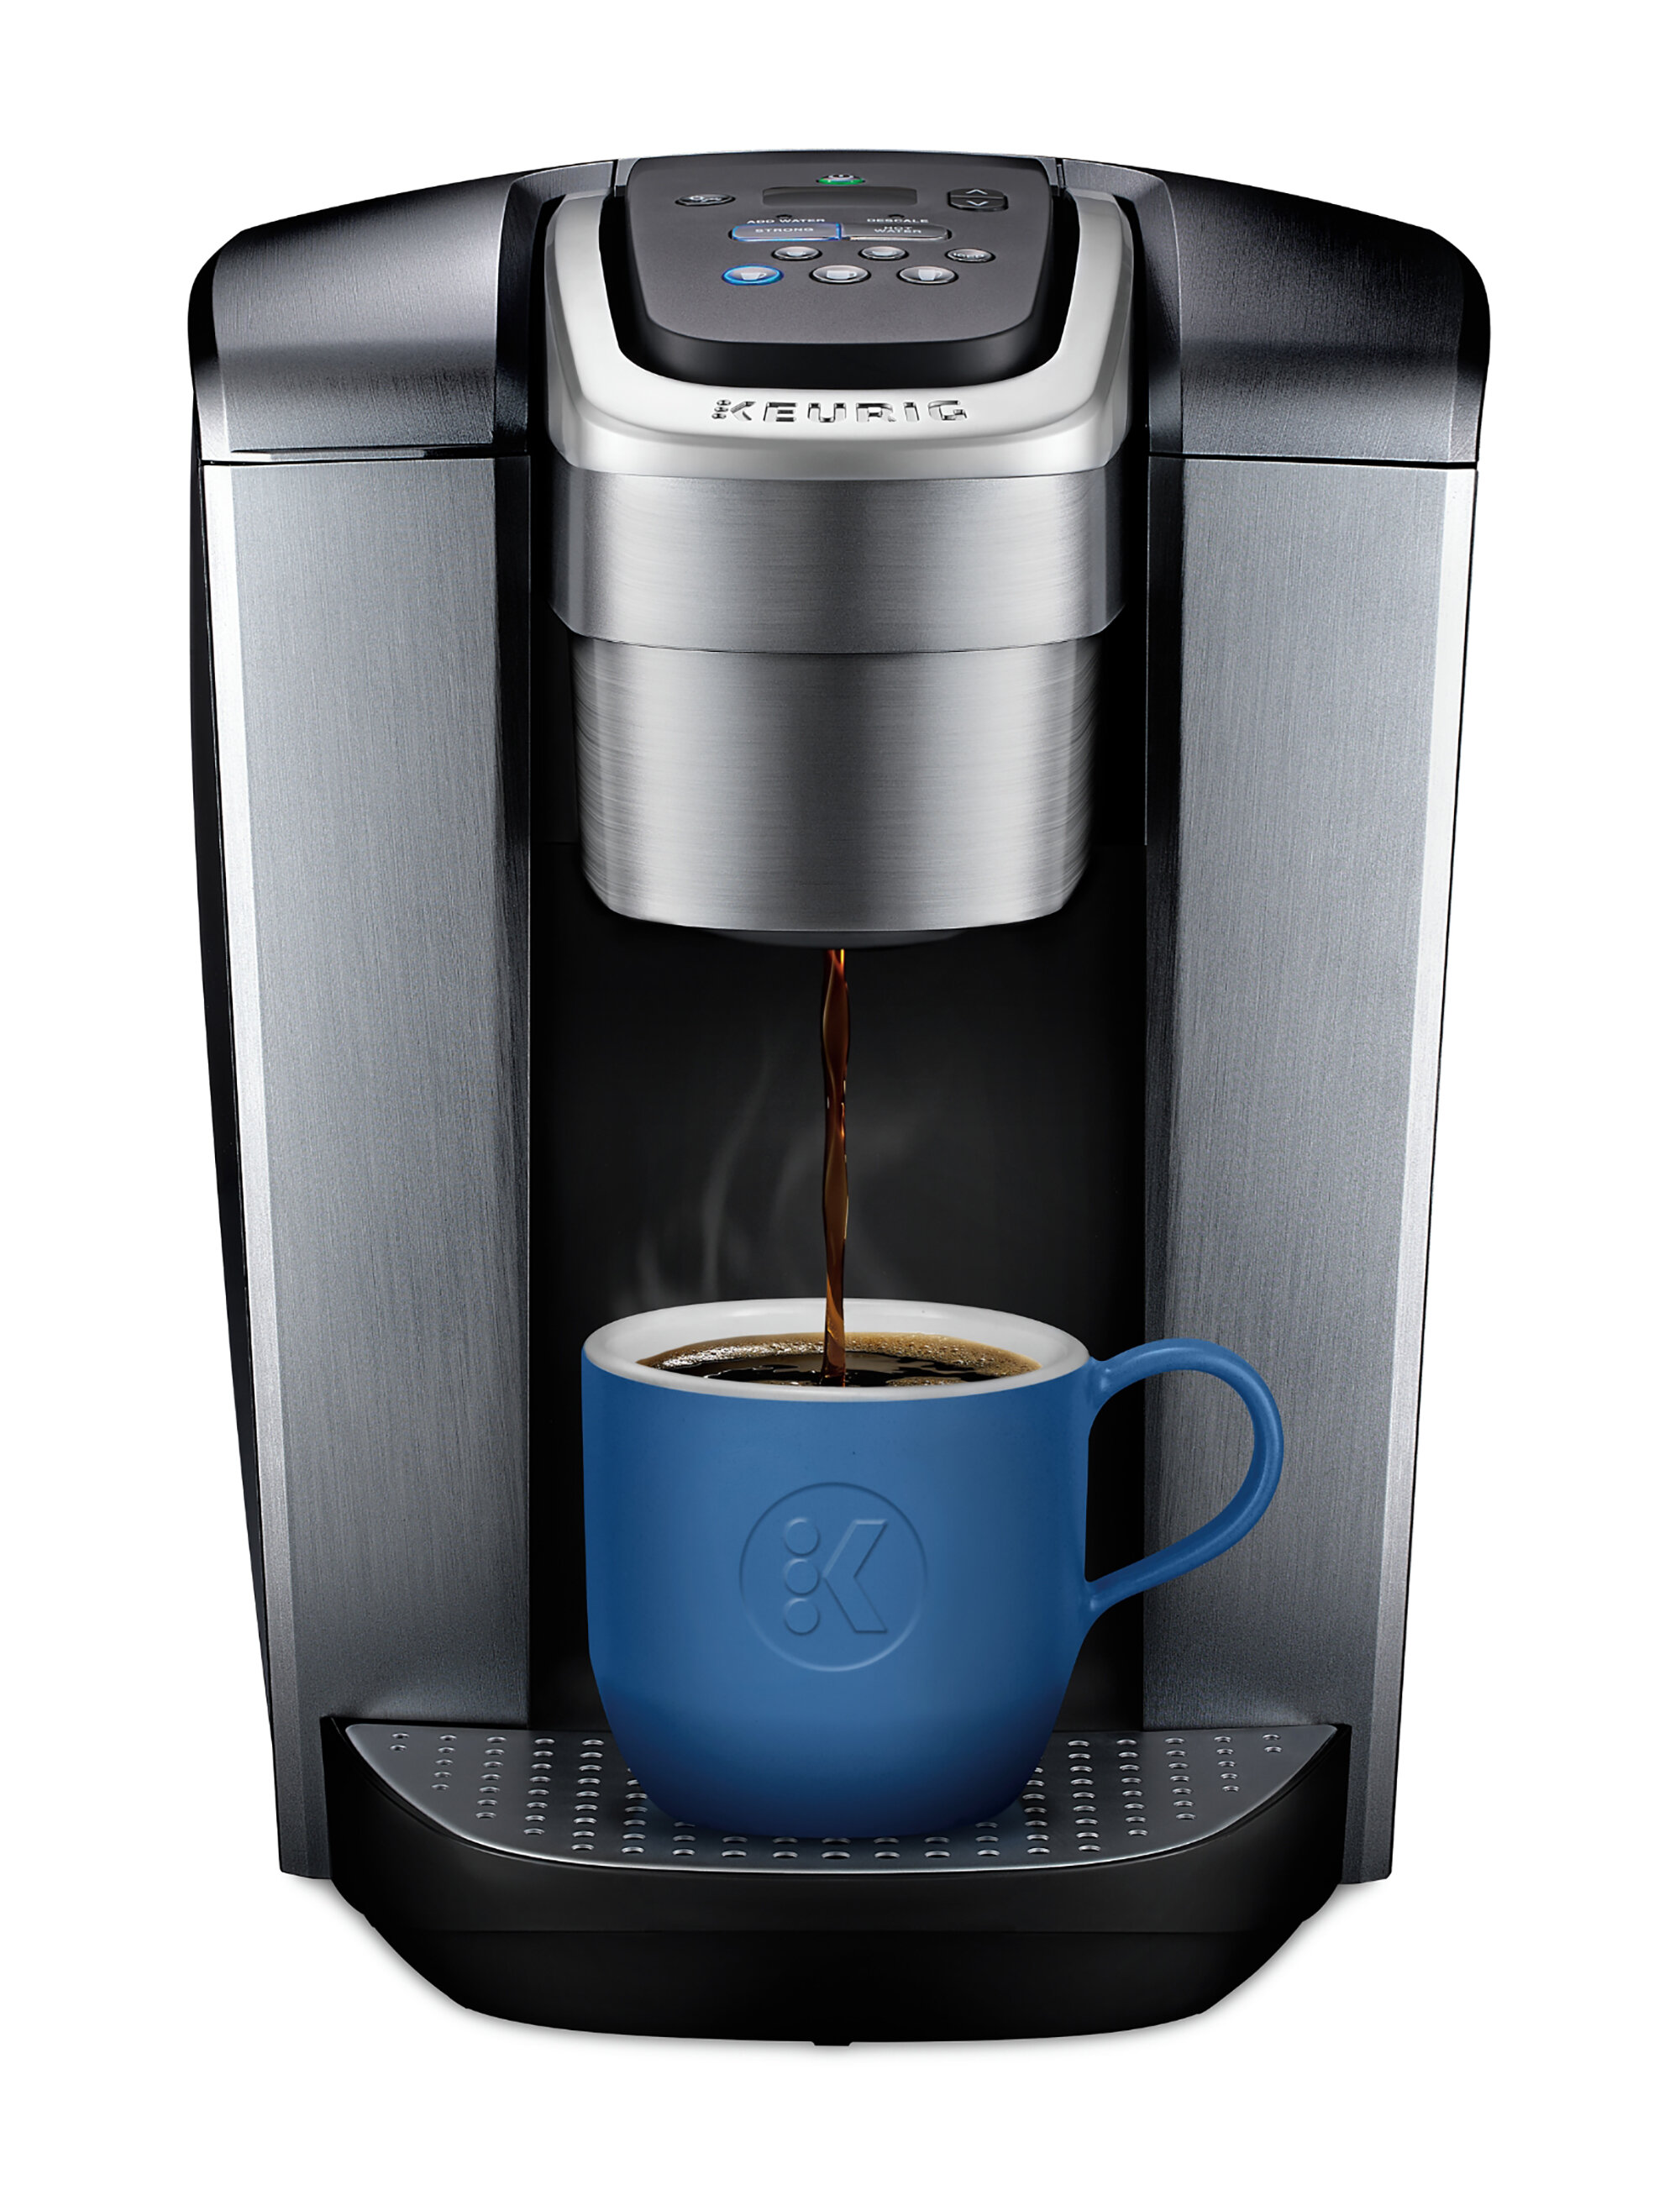 Way Day 2023: Save 20% on the Keurig K-Elite coffee maker at Wayfair